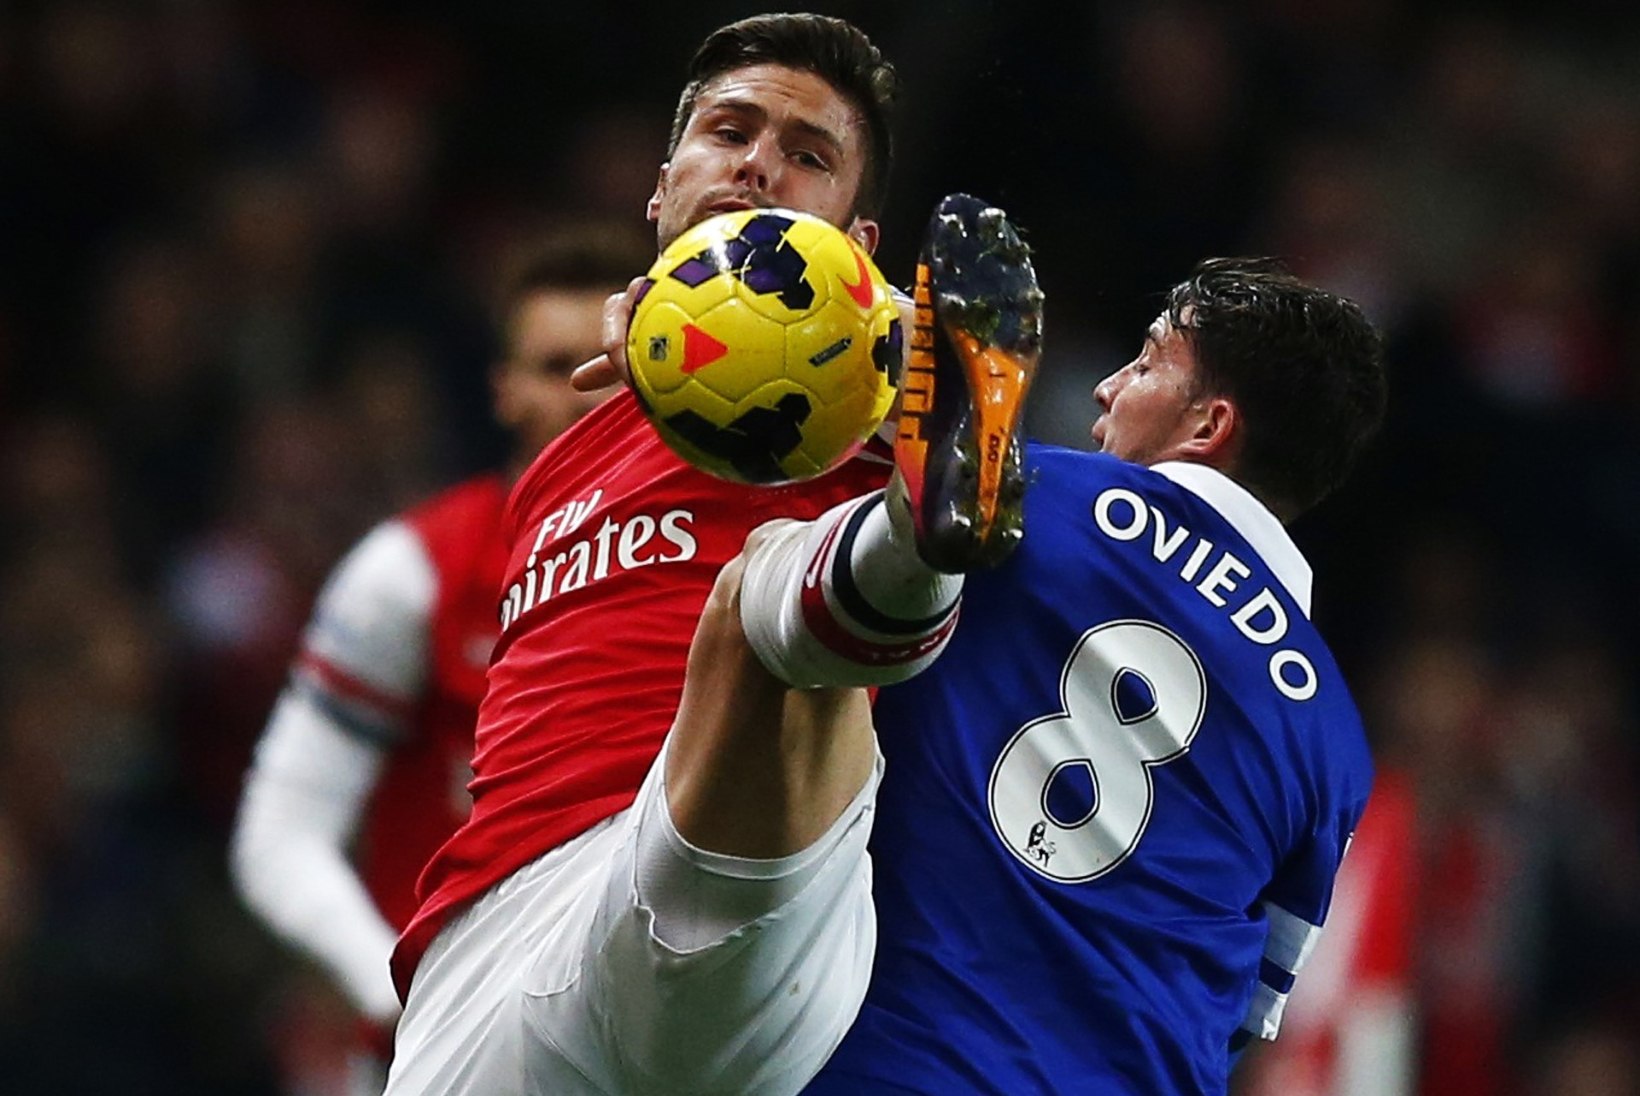 GALERII: Arsenal ja Everton pakkusid ägeda lõpu